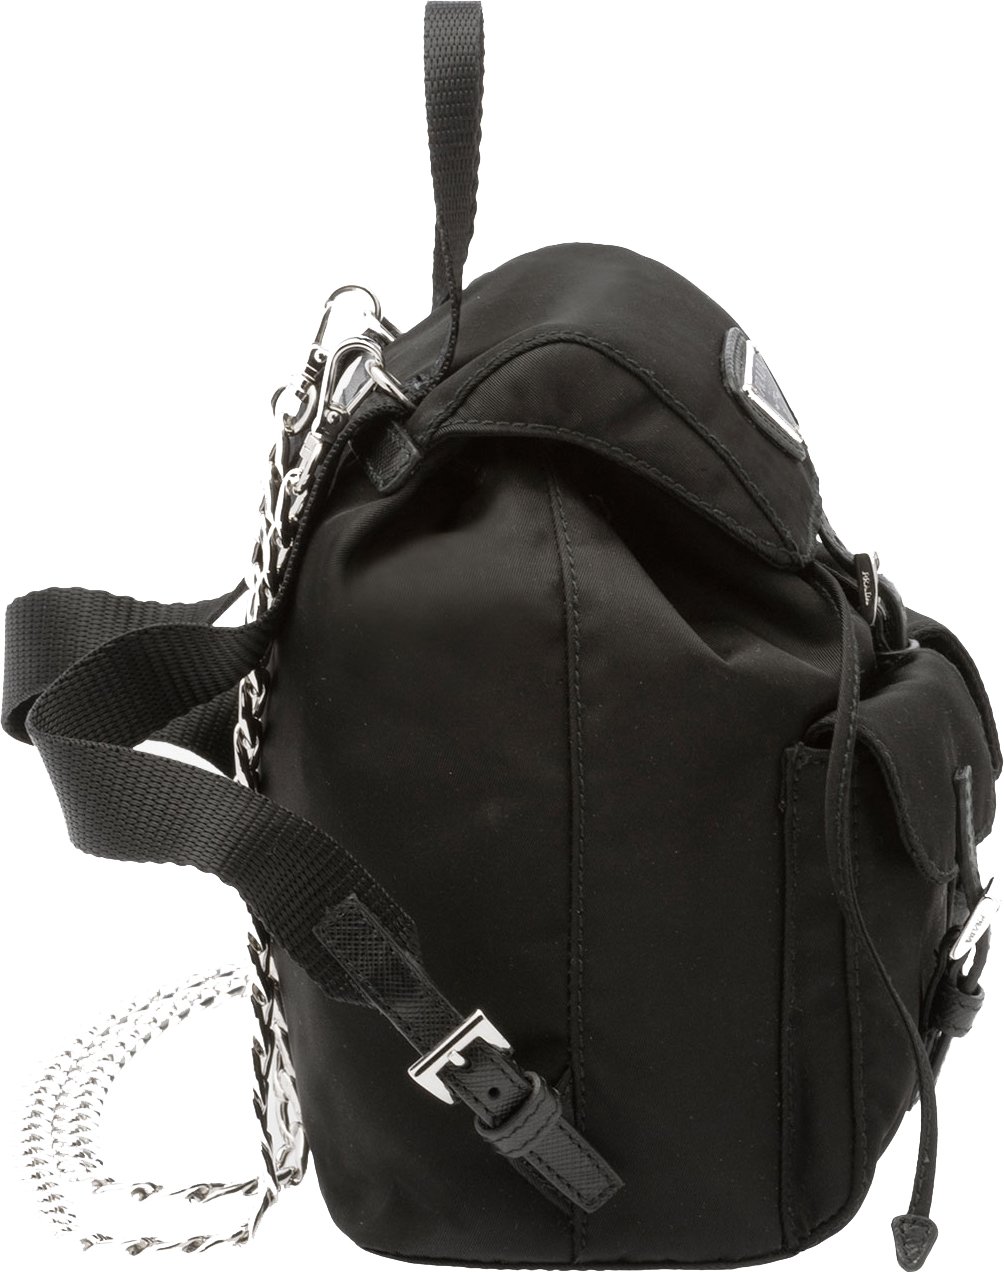 prada vela mini backpack with chain